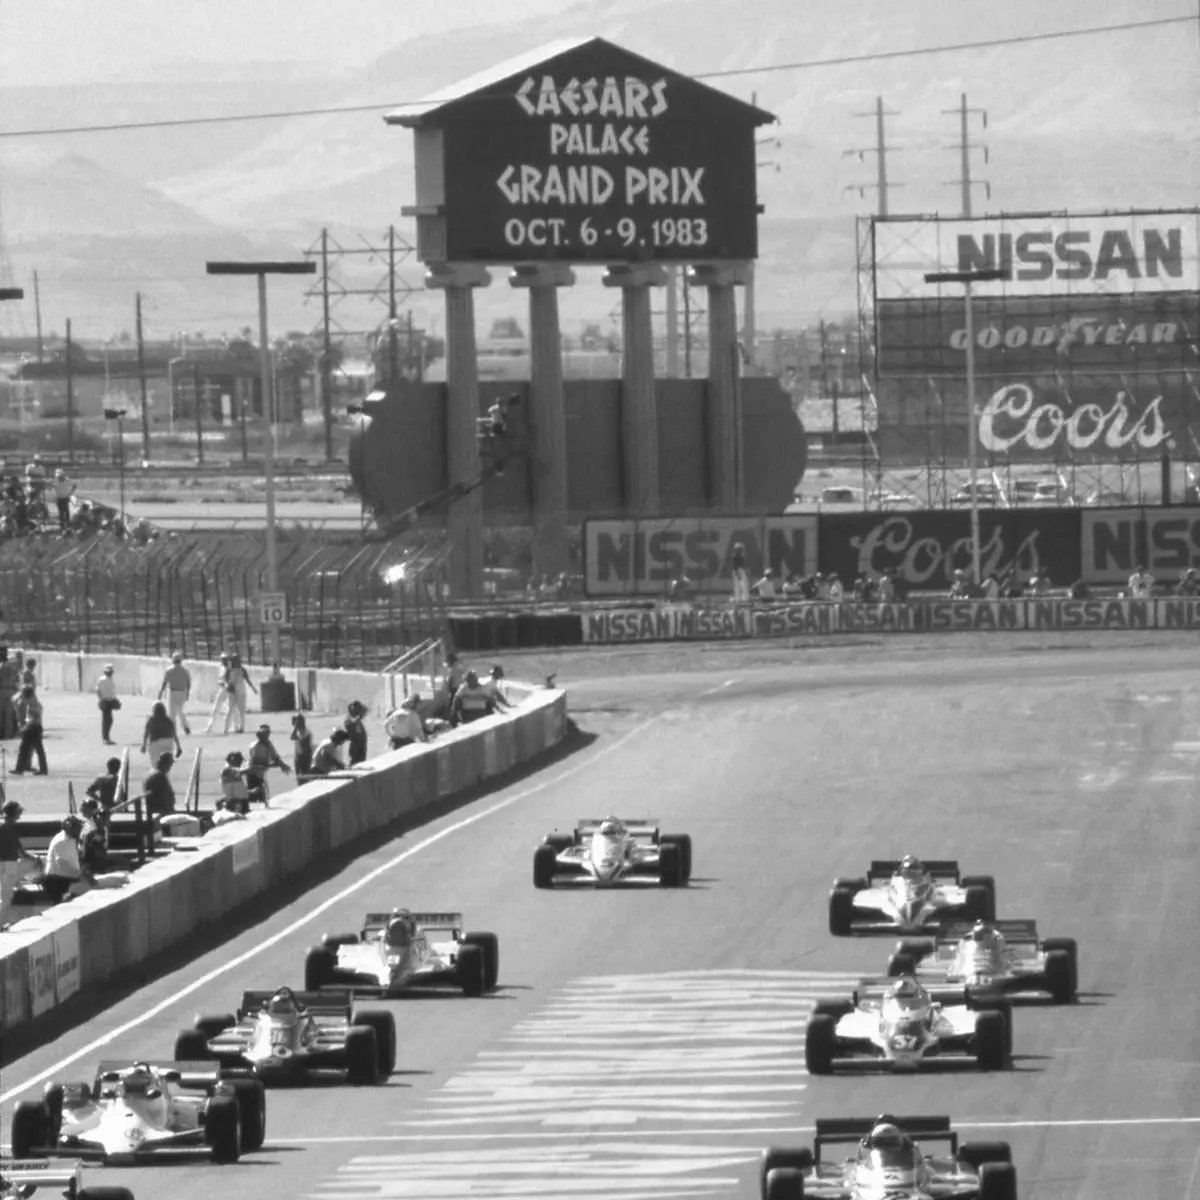 14825624_web1_CAESARS-Formula-One-1983.jpg